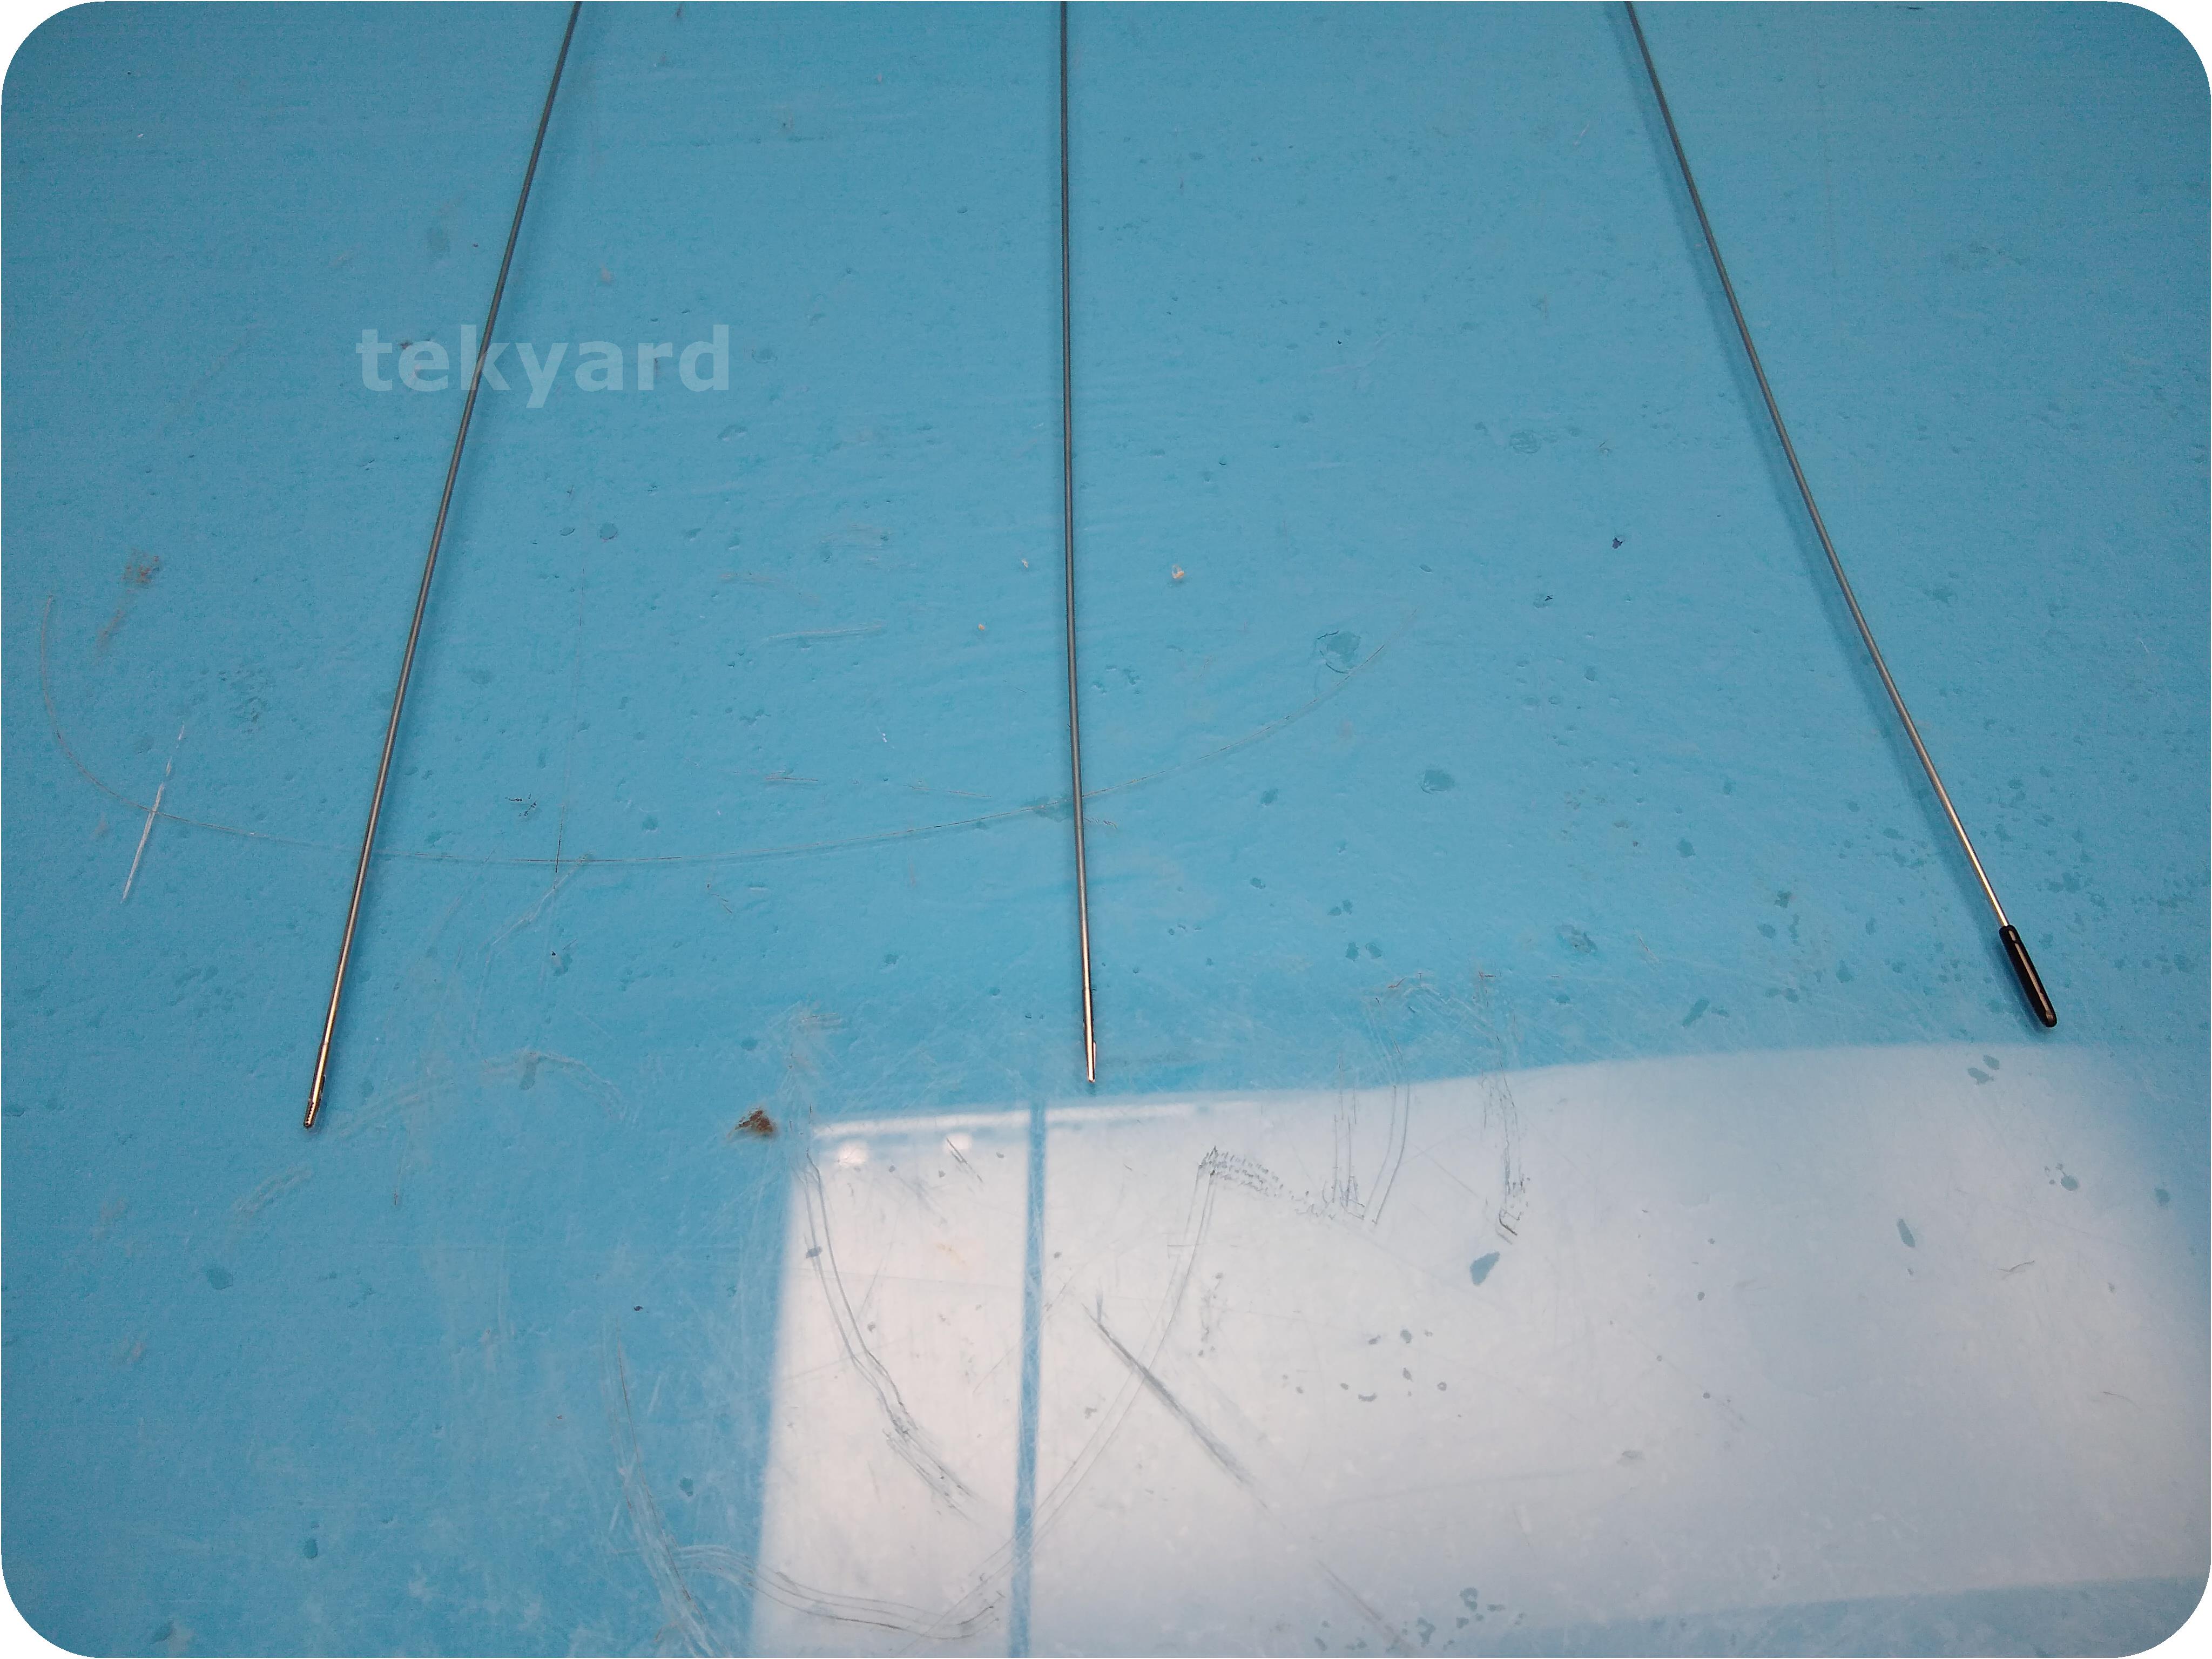 tekyard, LLC. - 250554-Gyrus ACMI GYS-5, GYB-5, GYA-5 Semi Rigid Grasping  Forceps, Biopsy Forceps, Scissors